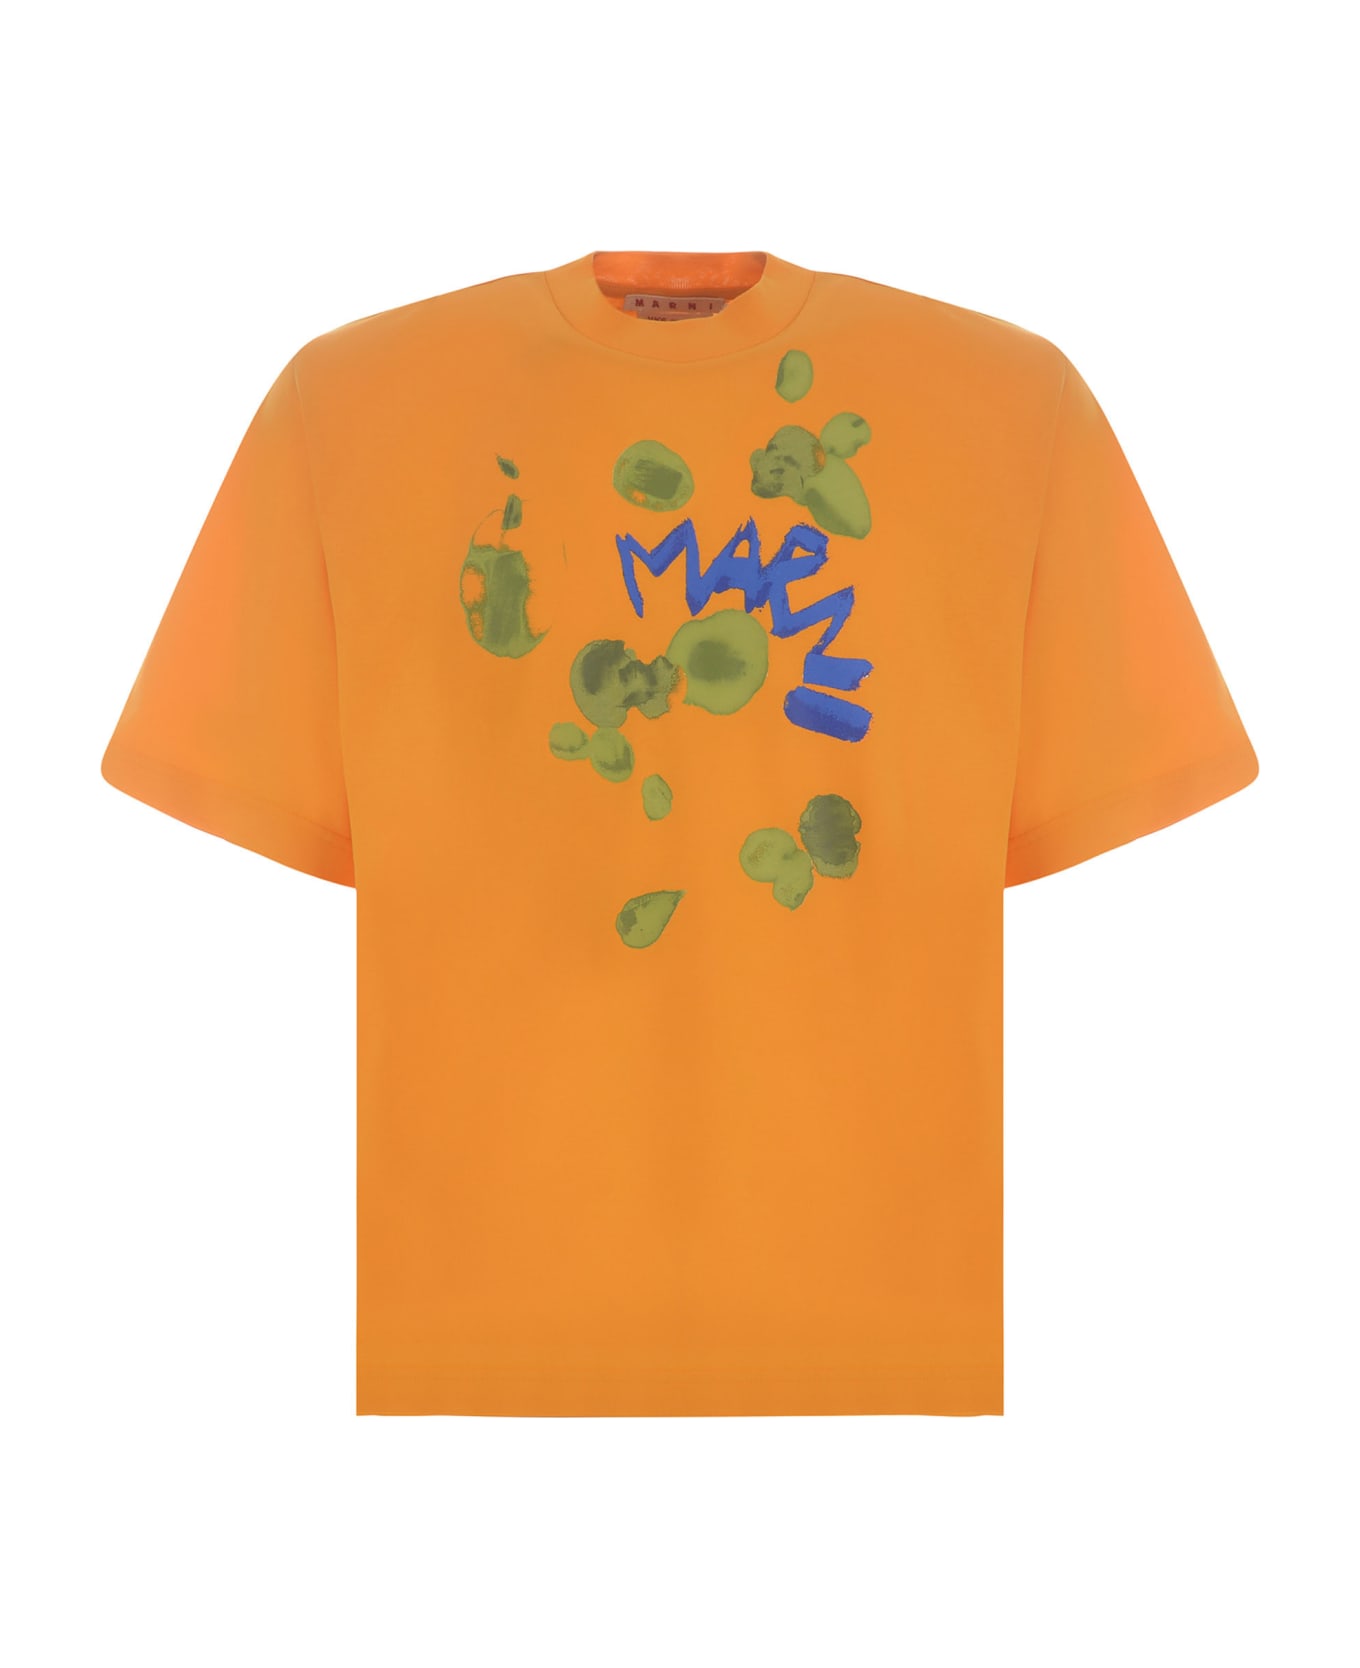 Marni T-shirt Marni Made Of Cotton - Arancione シャツ